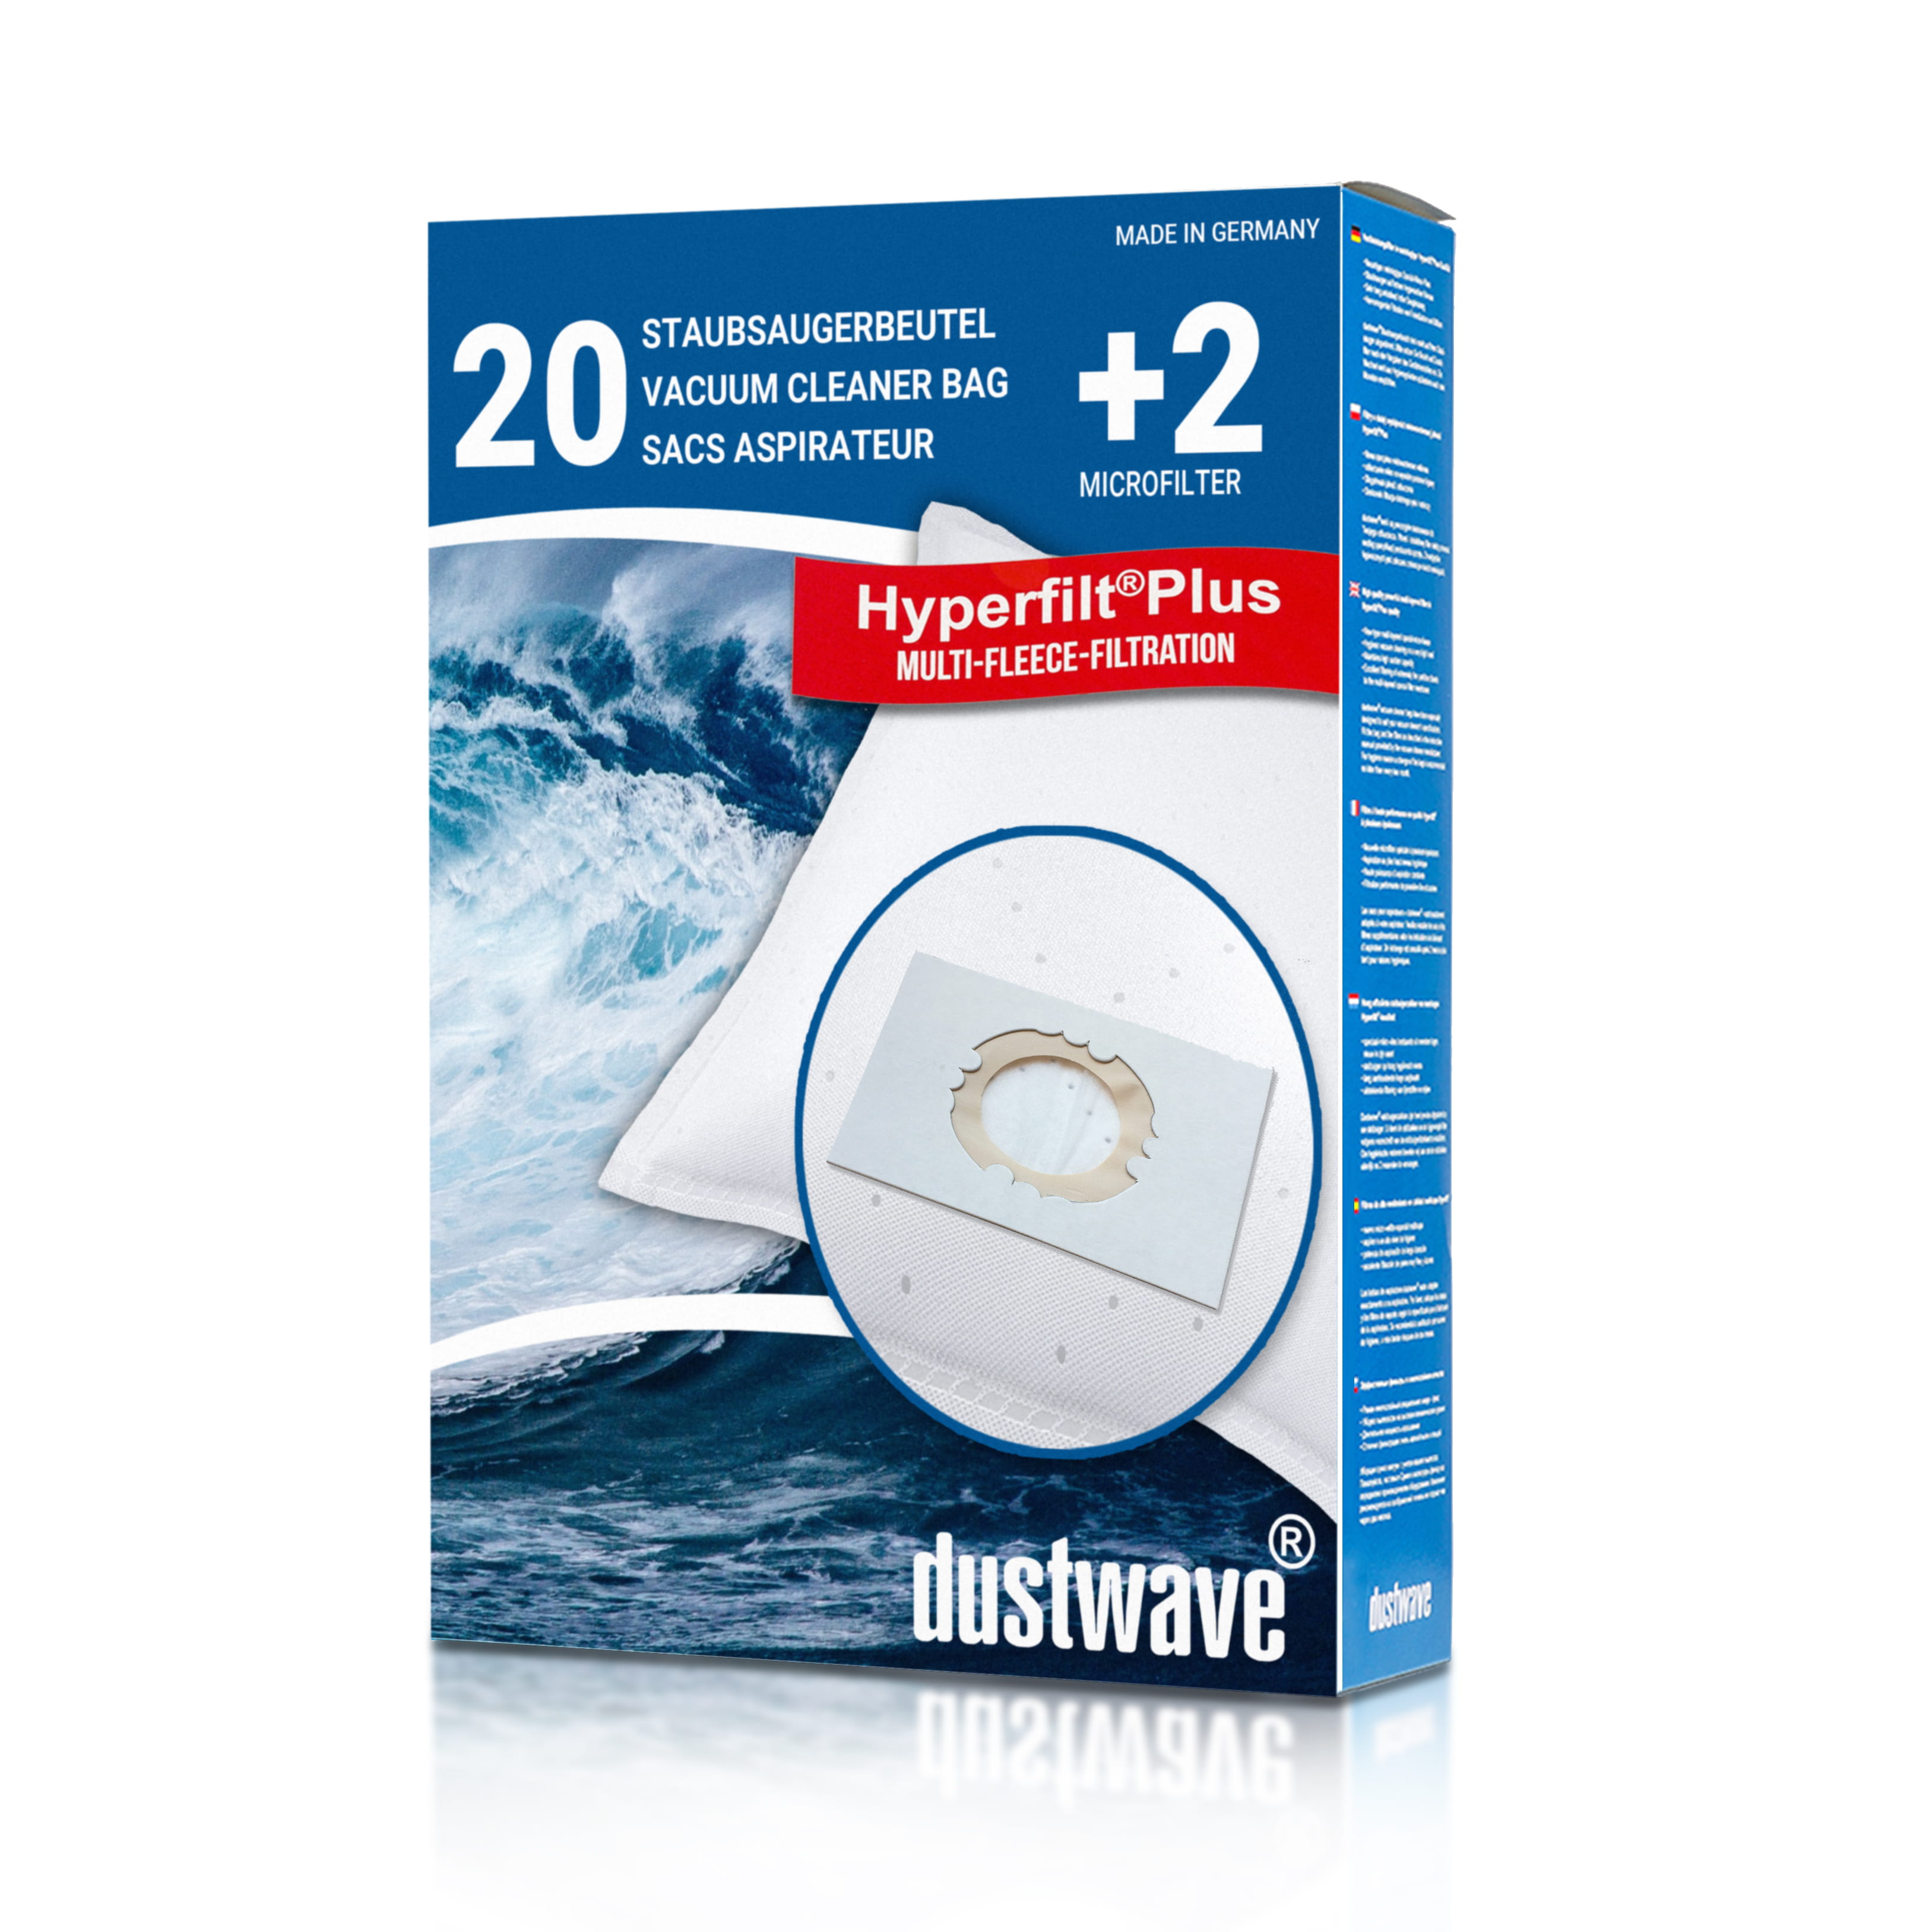 Dustwave® 20 Staubsaugerbeutel für Hoover S4380 Wet &amp; Dry - hocheffizient, mehrlagiges Mikrovlies mit Hygieneverschluss - Made in Germany